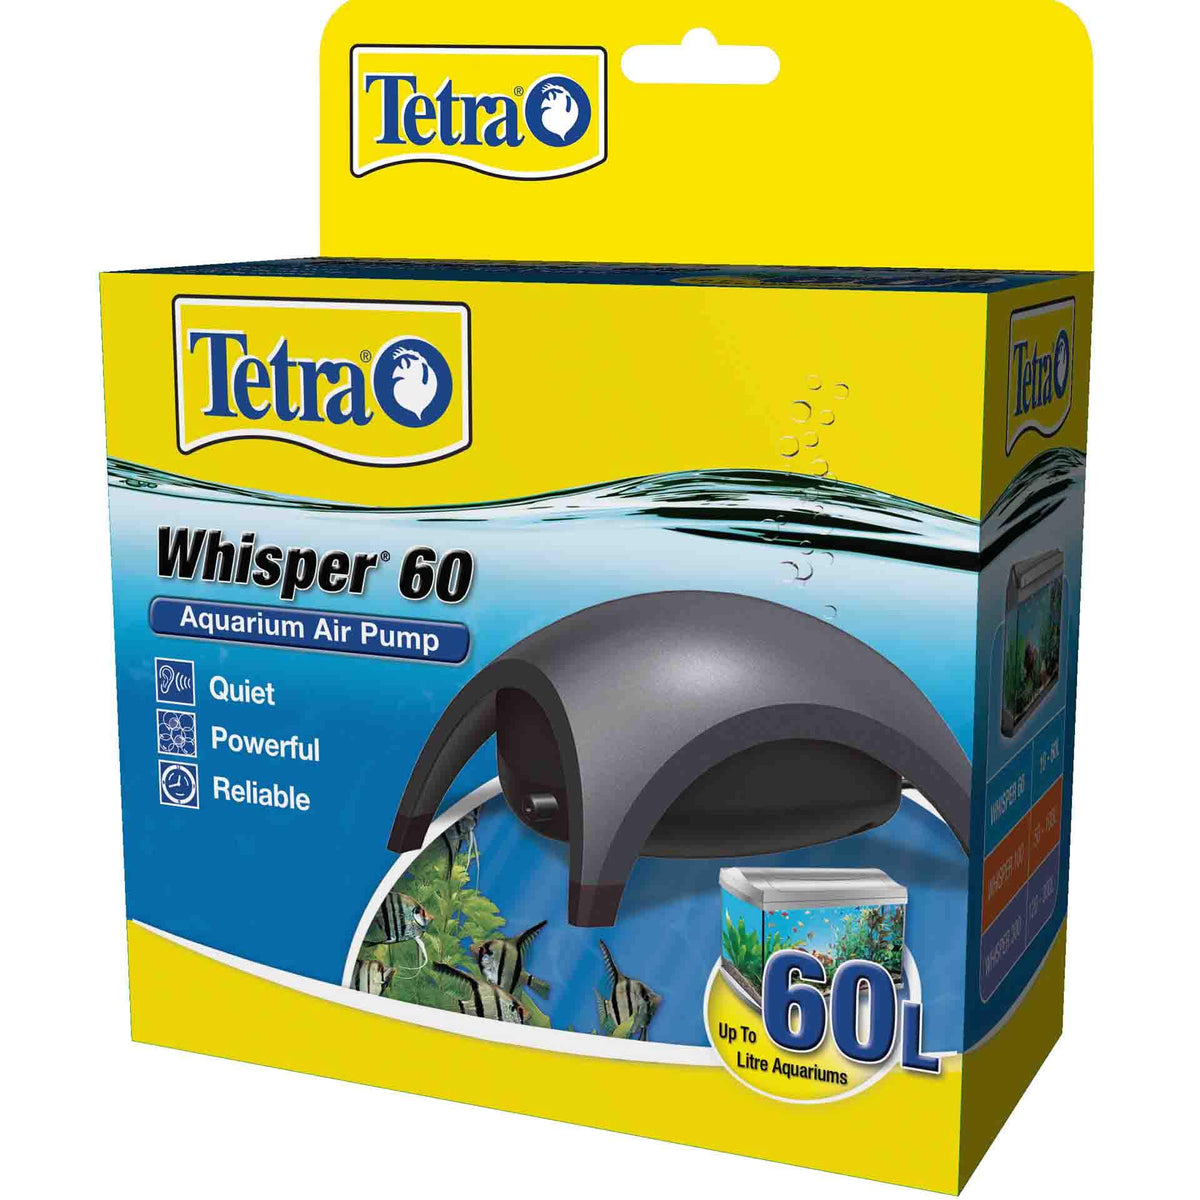 Tetra Whisper 60 Aquarium Air Pump